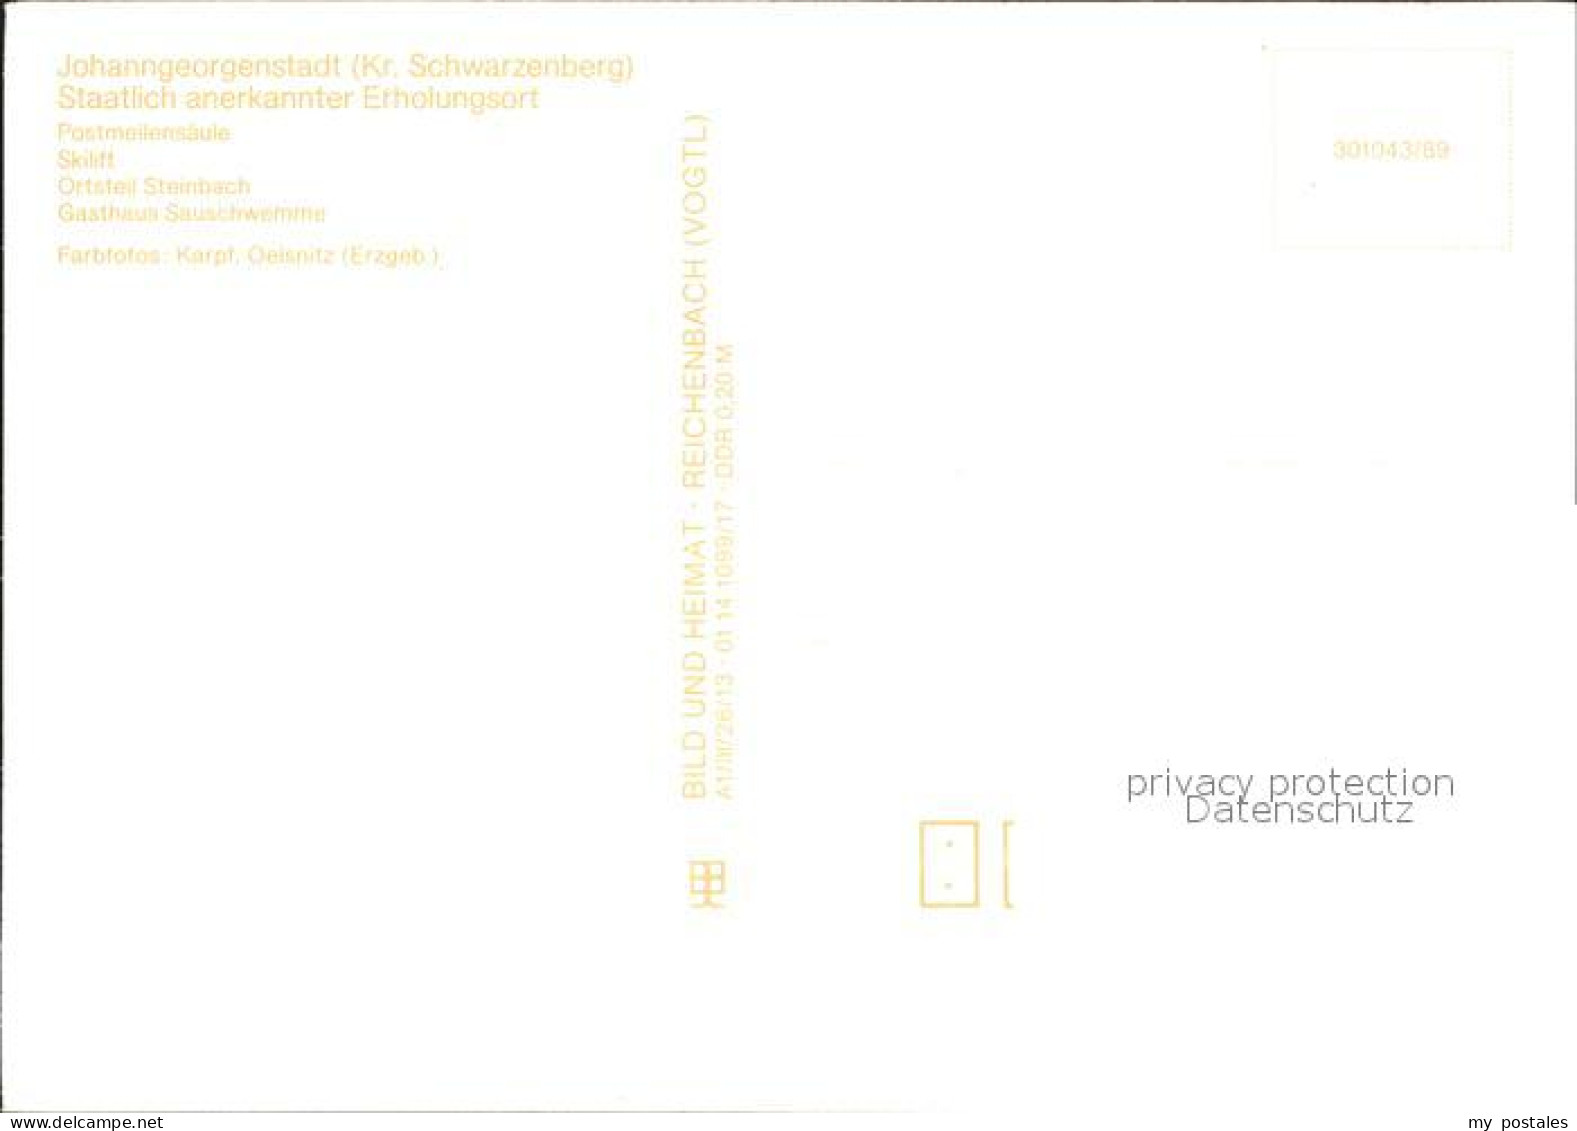 72382624 Johanngeorgenstadt Postmeilensaeule Skilift Gasthaus Sauschwemme Johann - Johanngeorgenstadt